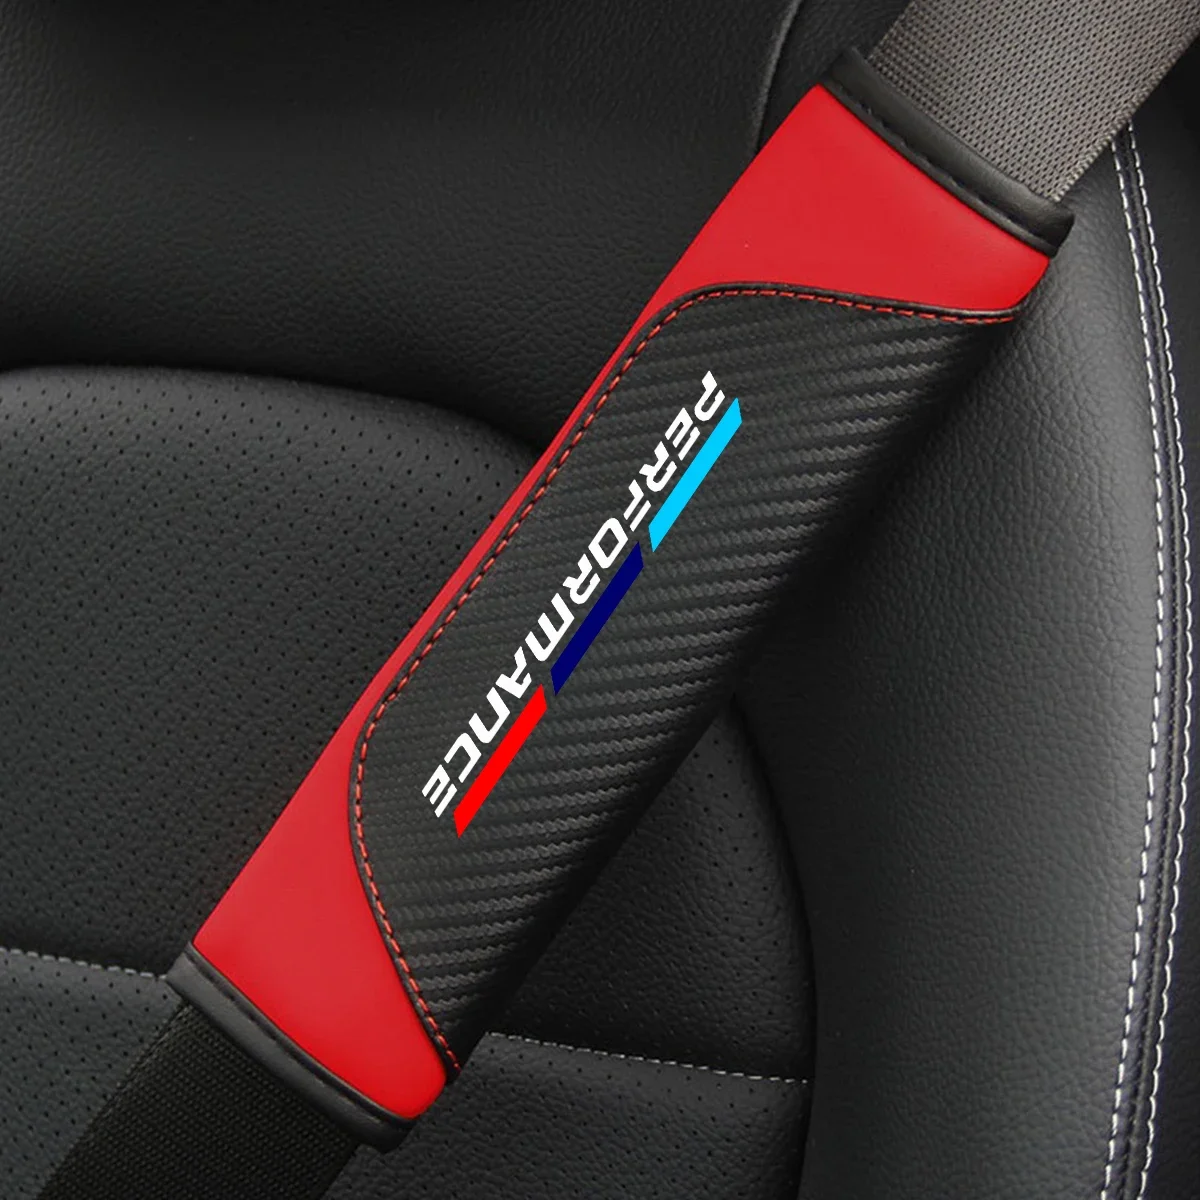 

2Pcs Carbon Fiber Leather Car Safety Belt Shoulder Protection Cover For BMW E46 E90 E60 F10 F30 E39 E36 F20 E87 E92 G30 E91 E92